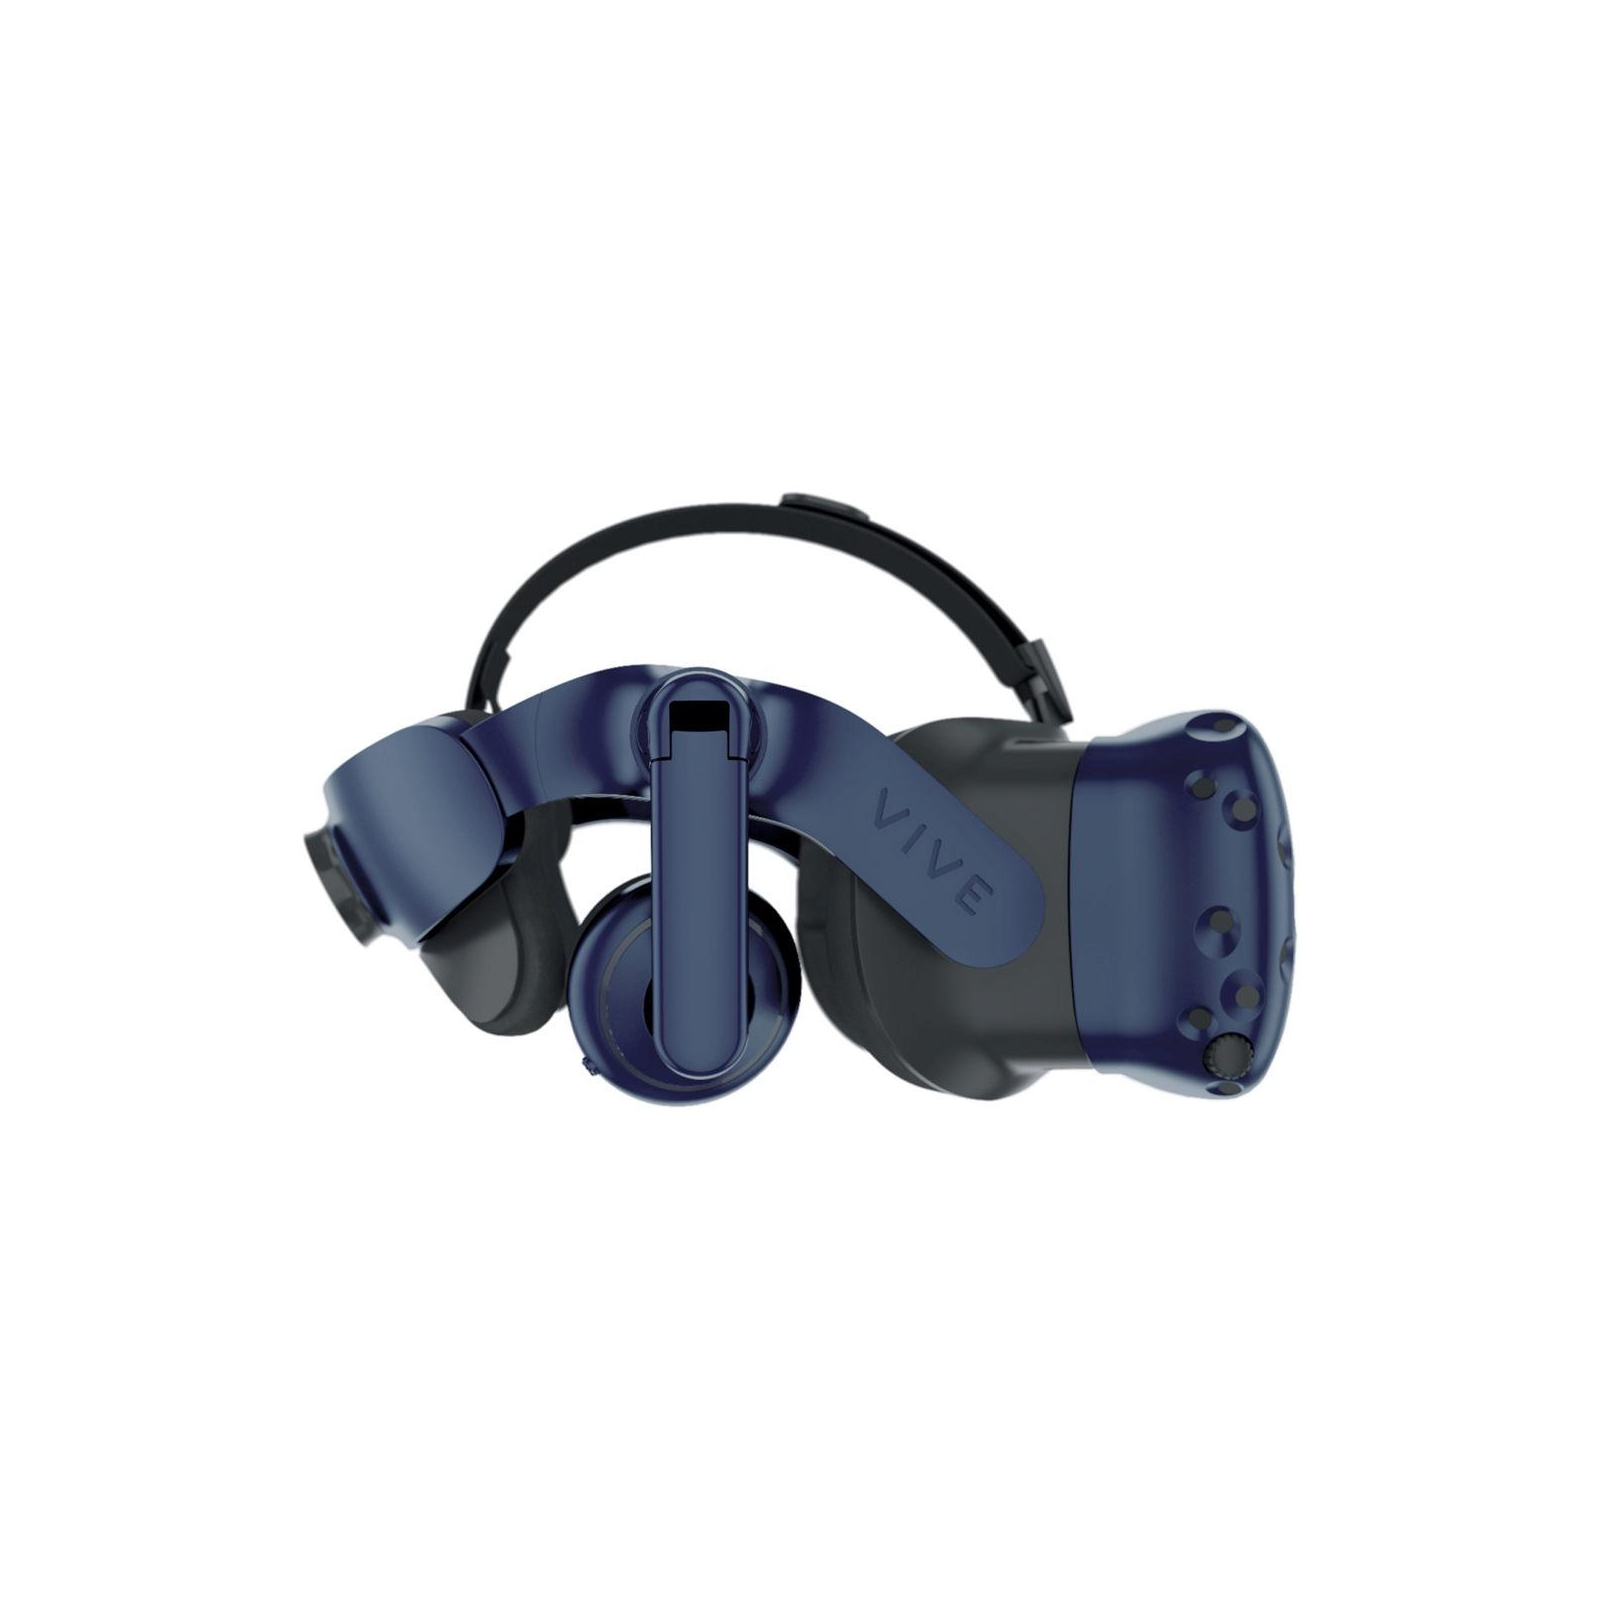 Очки виртуальной реальности HTC VIVE PRO KIT (2.0) Blue-Black (99HANW006-00) изображение 4